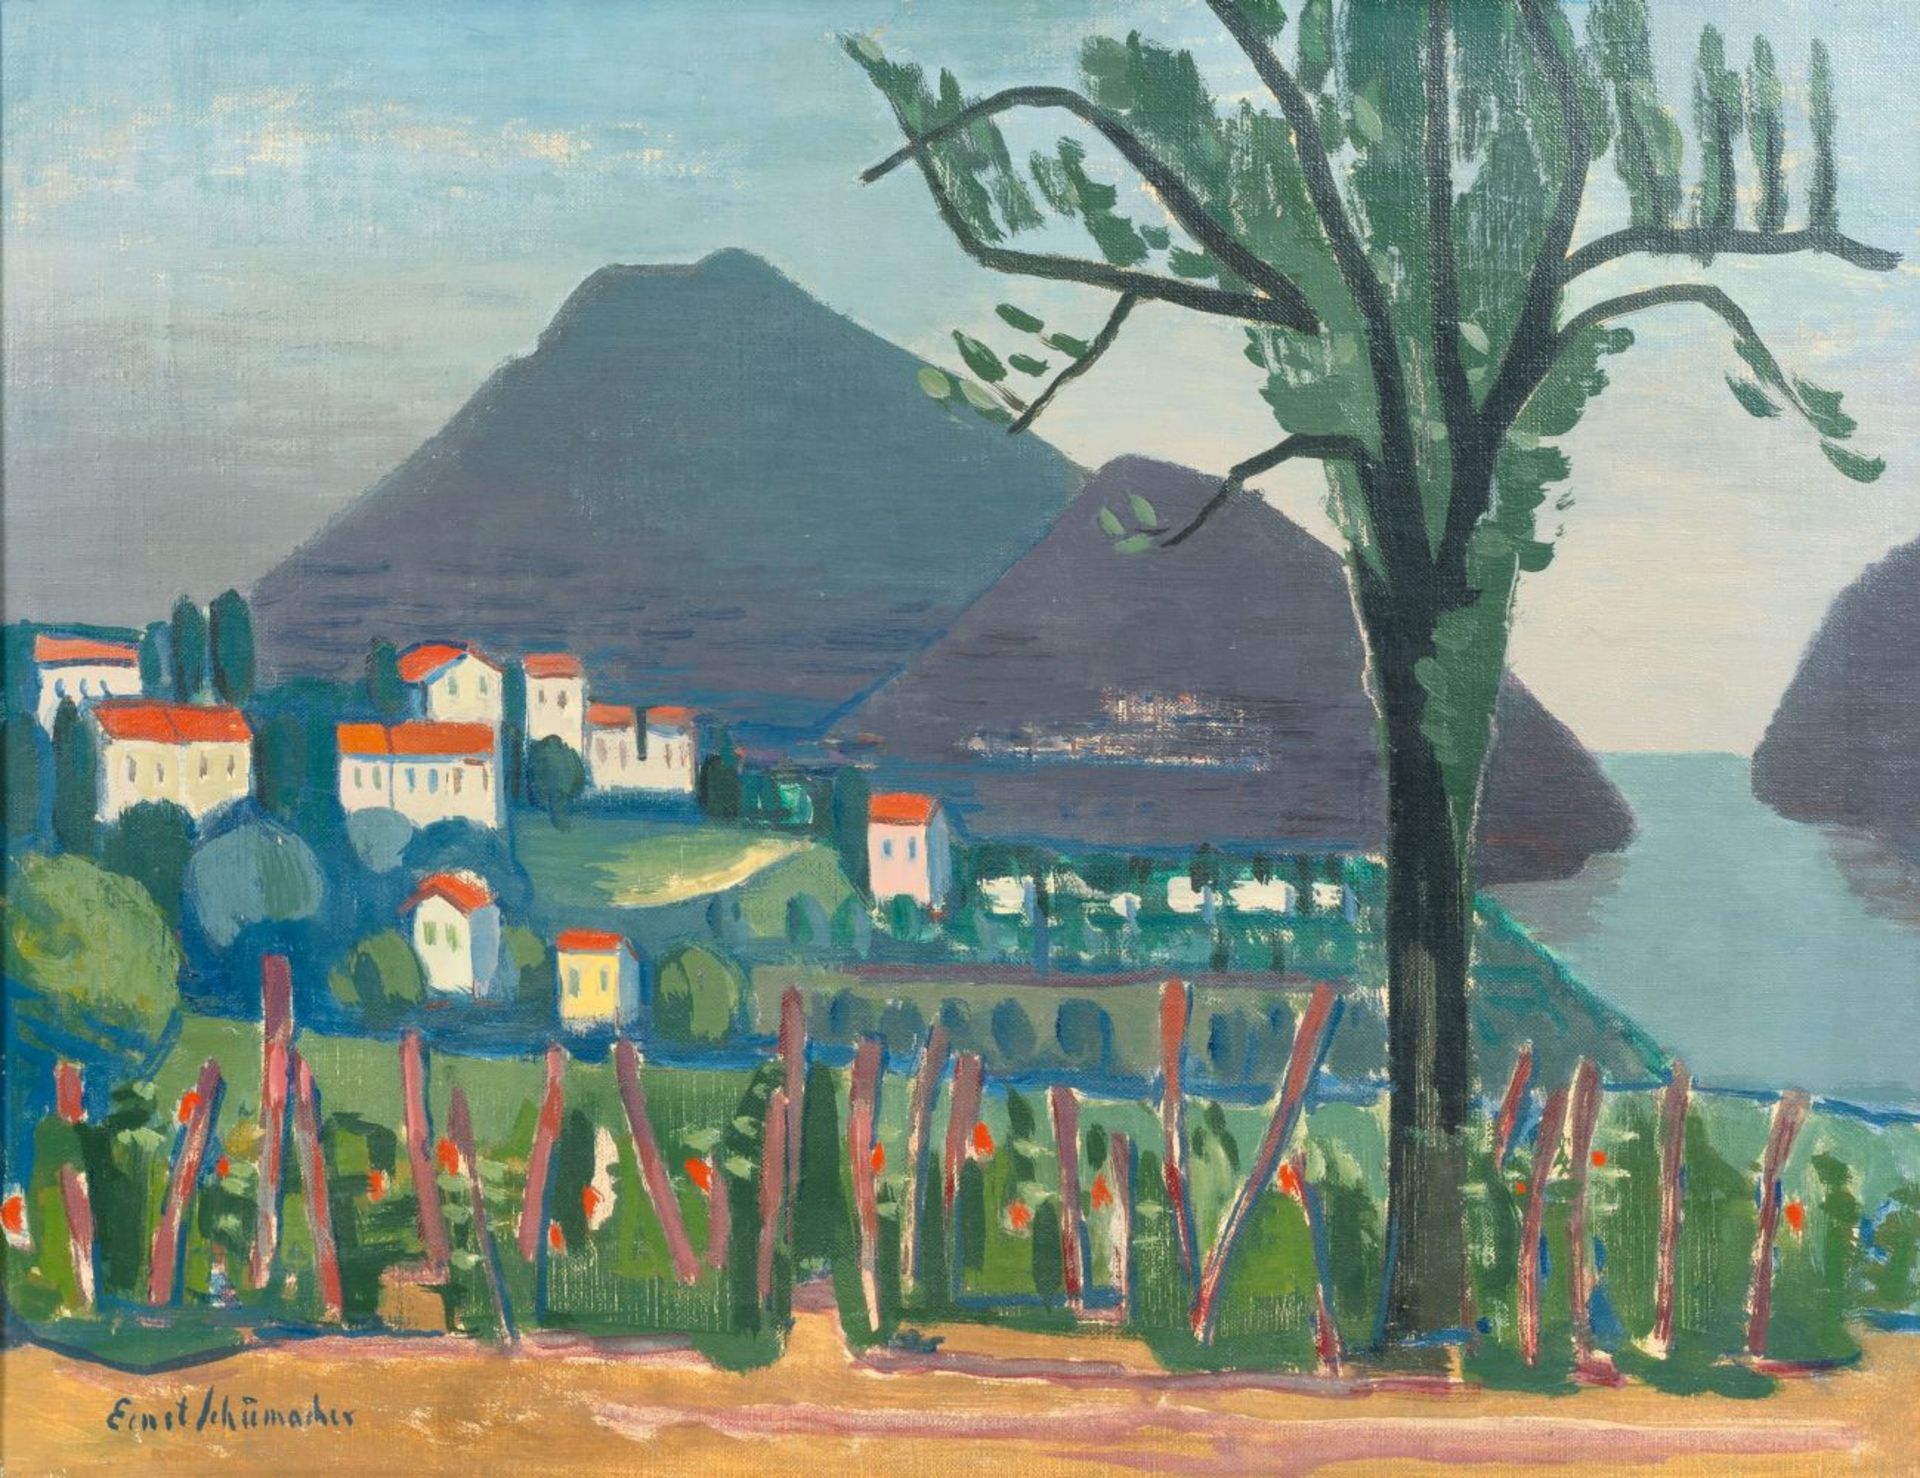 Schumacher, Ernst (Mönchengladbach 1905 - Berlin 1963). Southern Landscape.